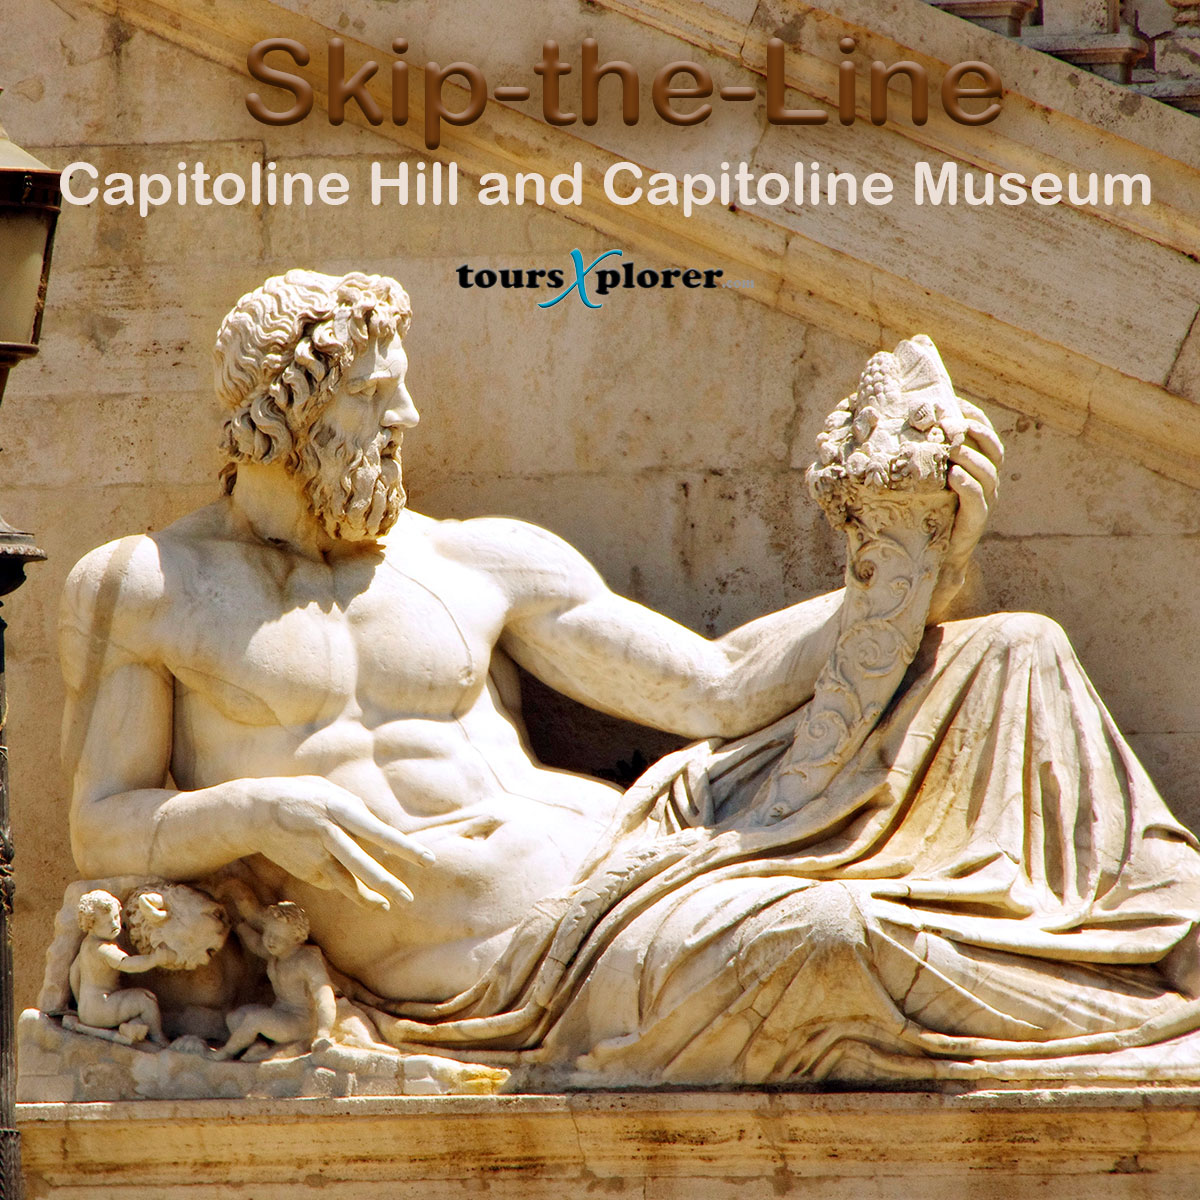 Capitoline Hill and Capitoline Museum Private Skip-the-Line Tour. 

#CapitolineHill #CapitolineMuseum #Rome #Italy #Travel #History #Art #Culture #Tourism #CityTour #ExploreRome #Vacation #Toursxplorer

toursxplorer.com/tour/capitolin…